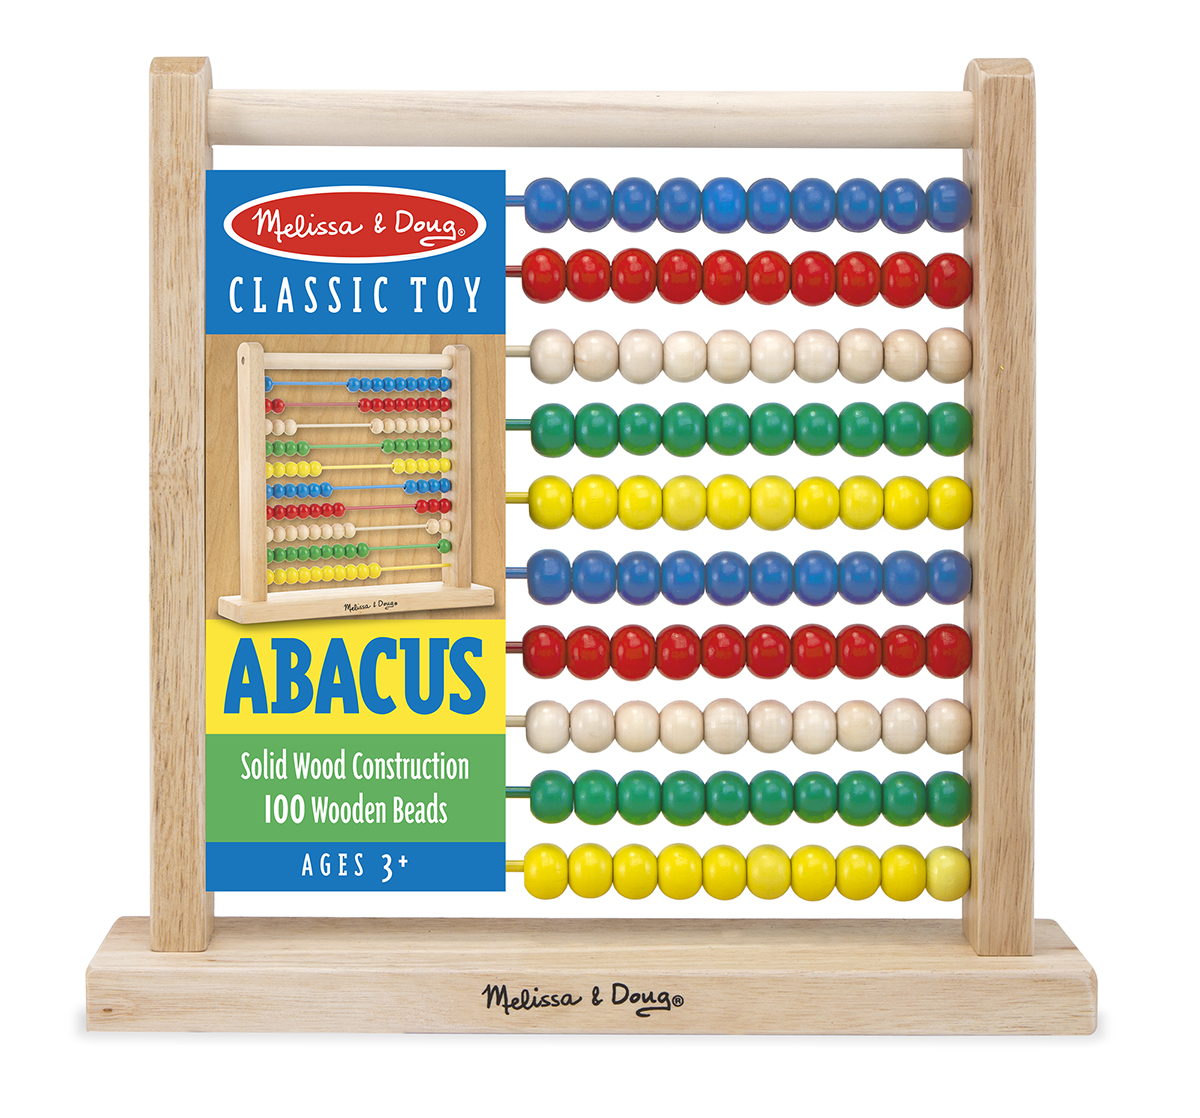 Melissa & Doug รุ่น 493 Abacus ชุดของเล่นไม้ลูกคิด ส่งเสริมความเข้าใจ เรื่องจำนวนและตัวเลข